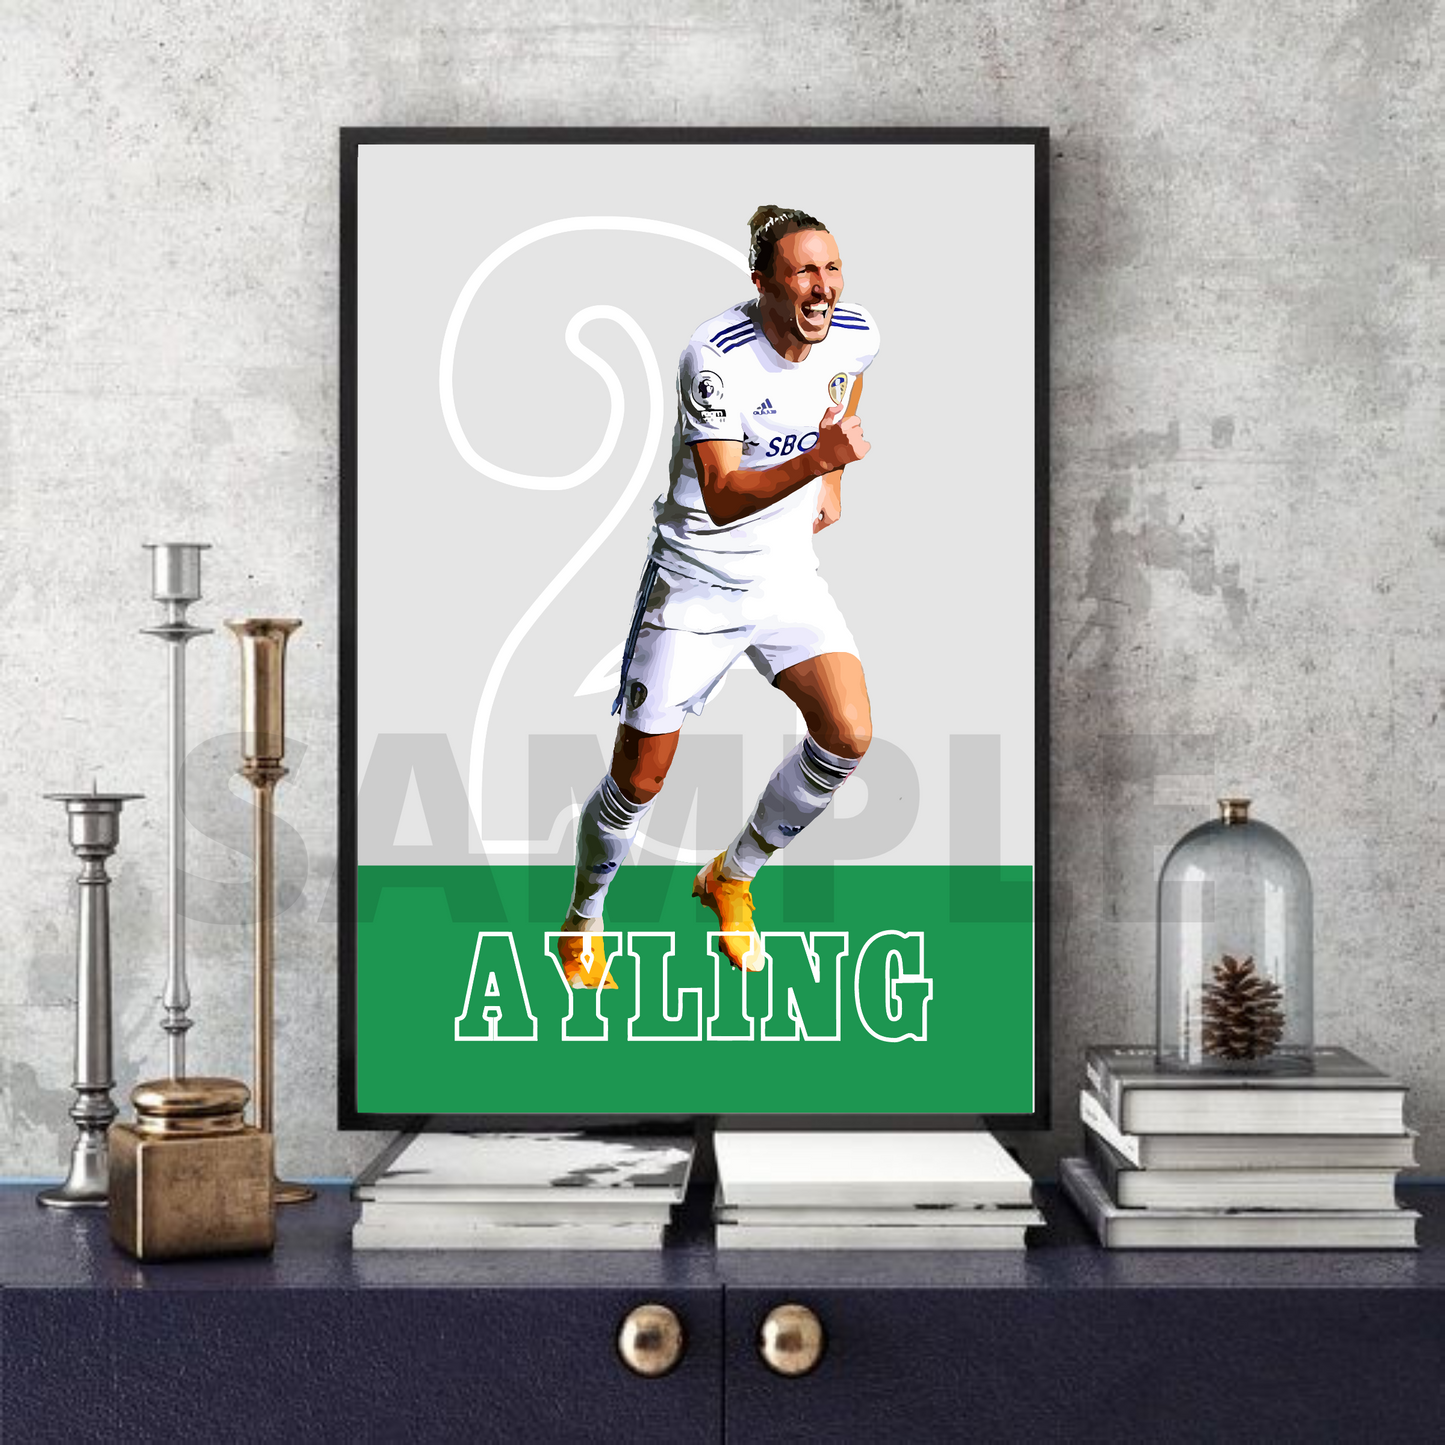 Luke Ayling - Leeds United Football collectible/memorabilia/print